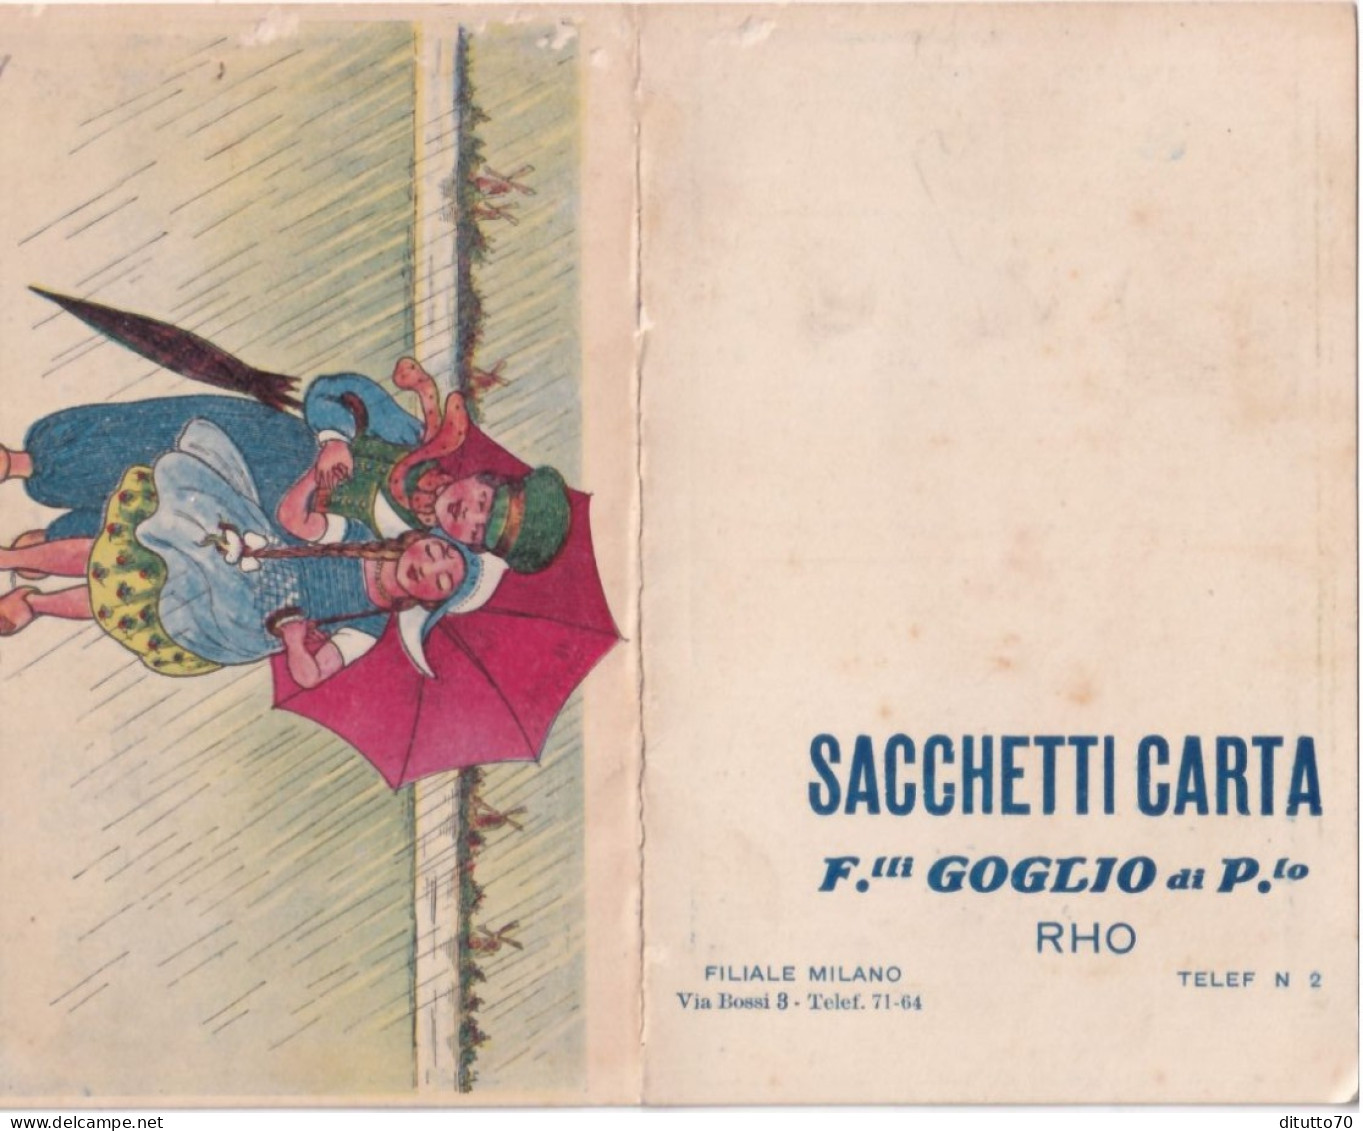 Calendarietto - Sacchetti Carta - F.lli Goglio Di P.lo - Rho - Anno 1915 - Formato Piccolo : 1901-20